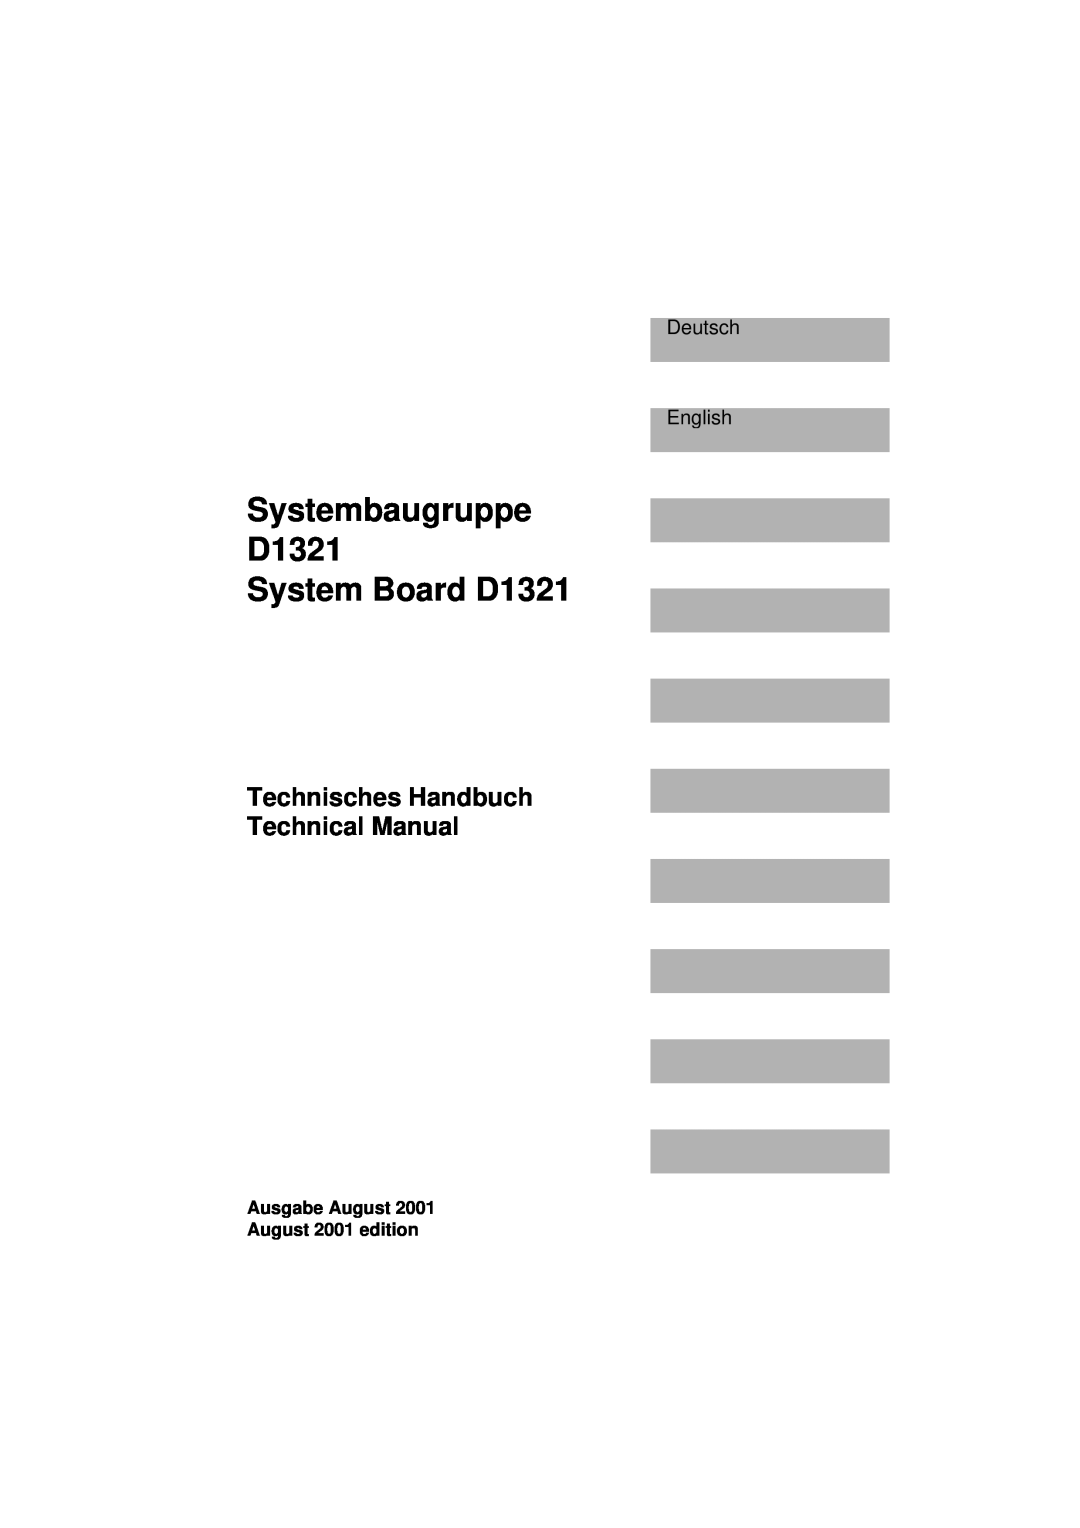 Fujitsu Systembaugruppe D1321 System Board D1321, Technisches Handbuch Technical Manual, Deutsch English 